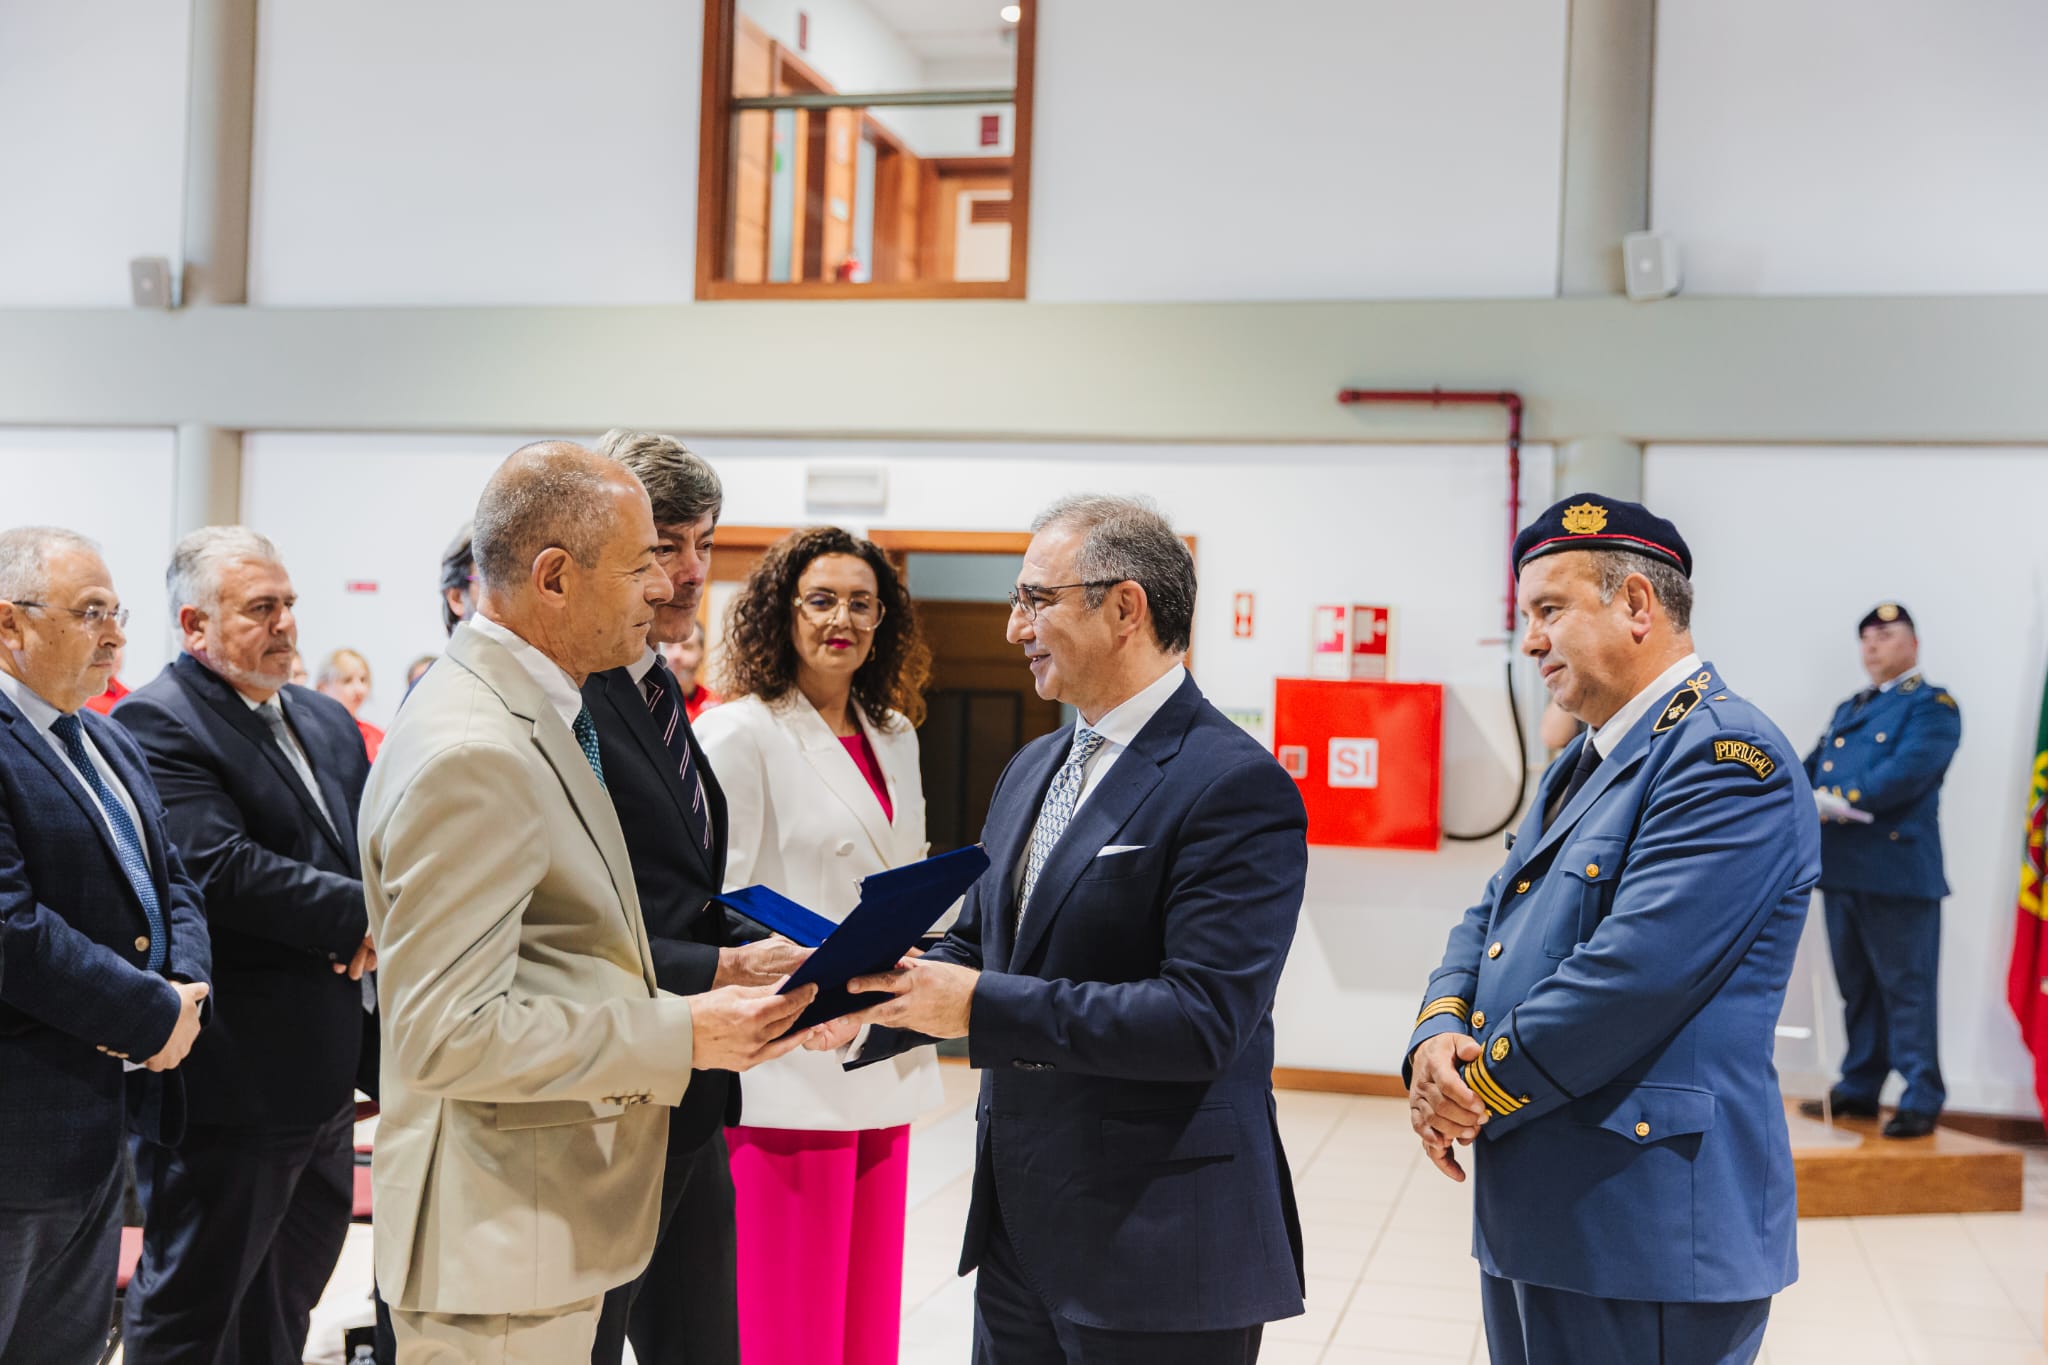 Presidente da Autarquia marca presença no 3.º Encontro Regional de Bombeiros Profissionais dos Açores